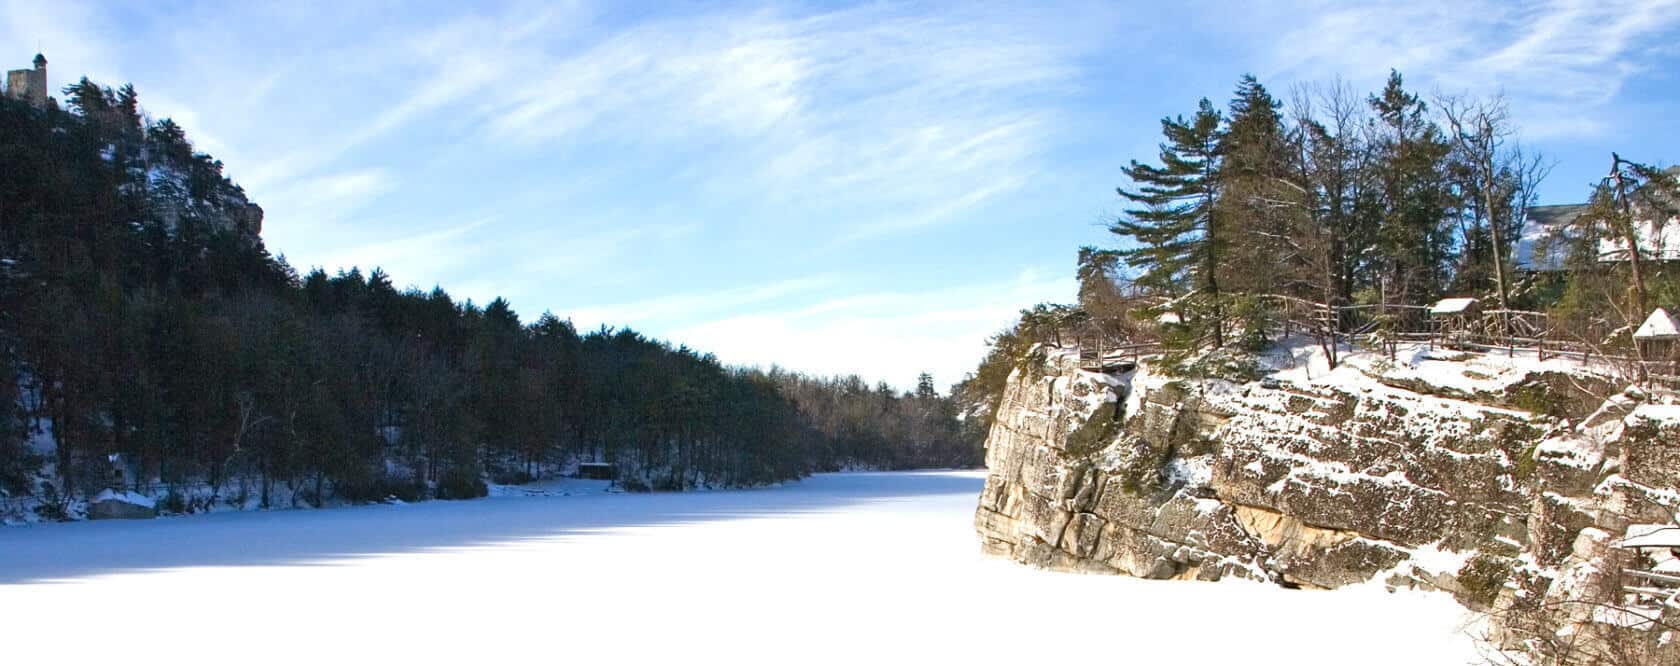 Mohonk Winter Landscape